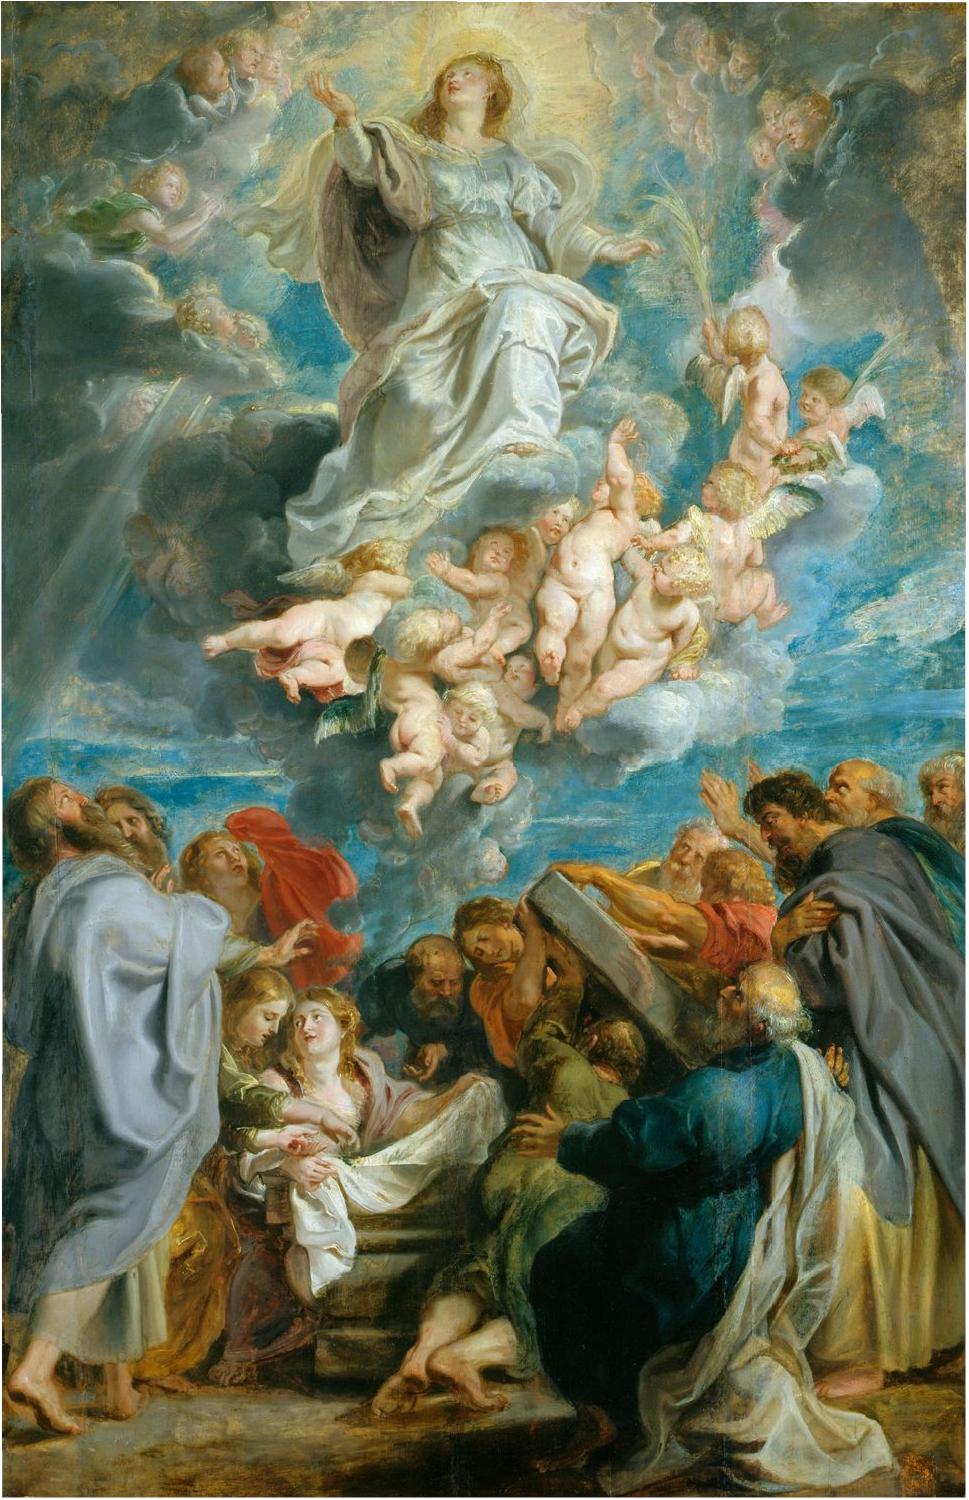 [The_Assumption_of_the_Virgin_(1612-17);_Peter_Paul_Rubens.jpg]